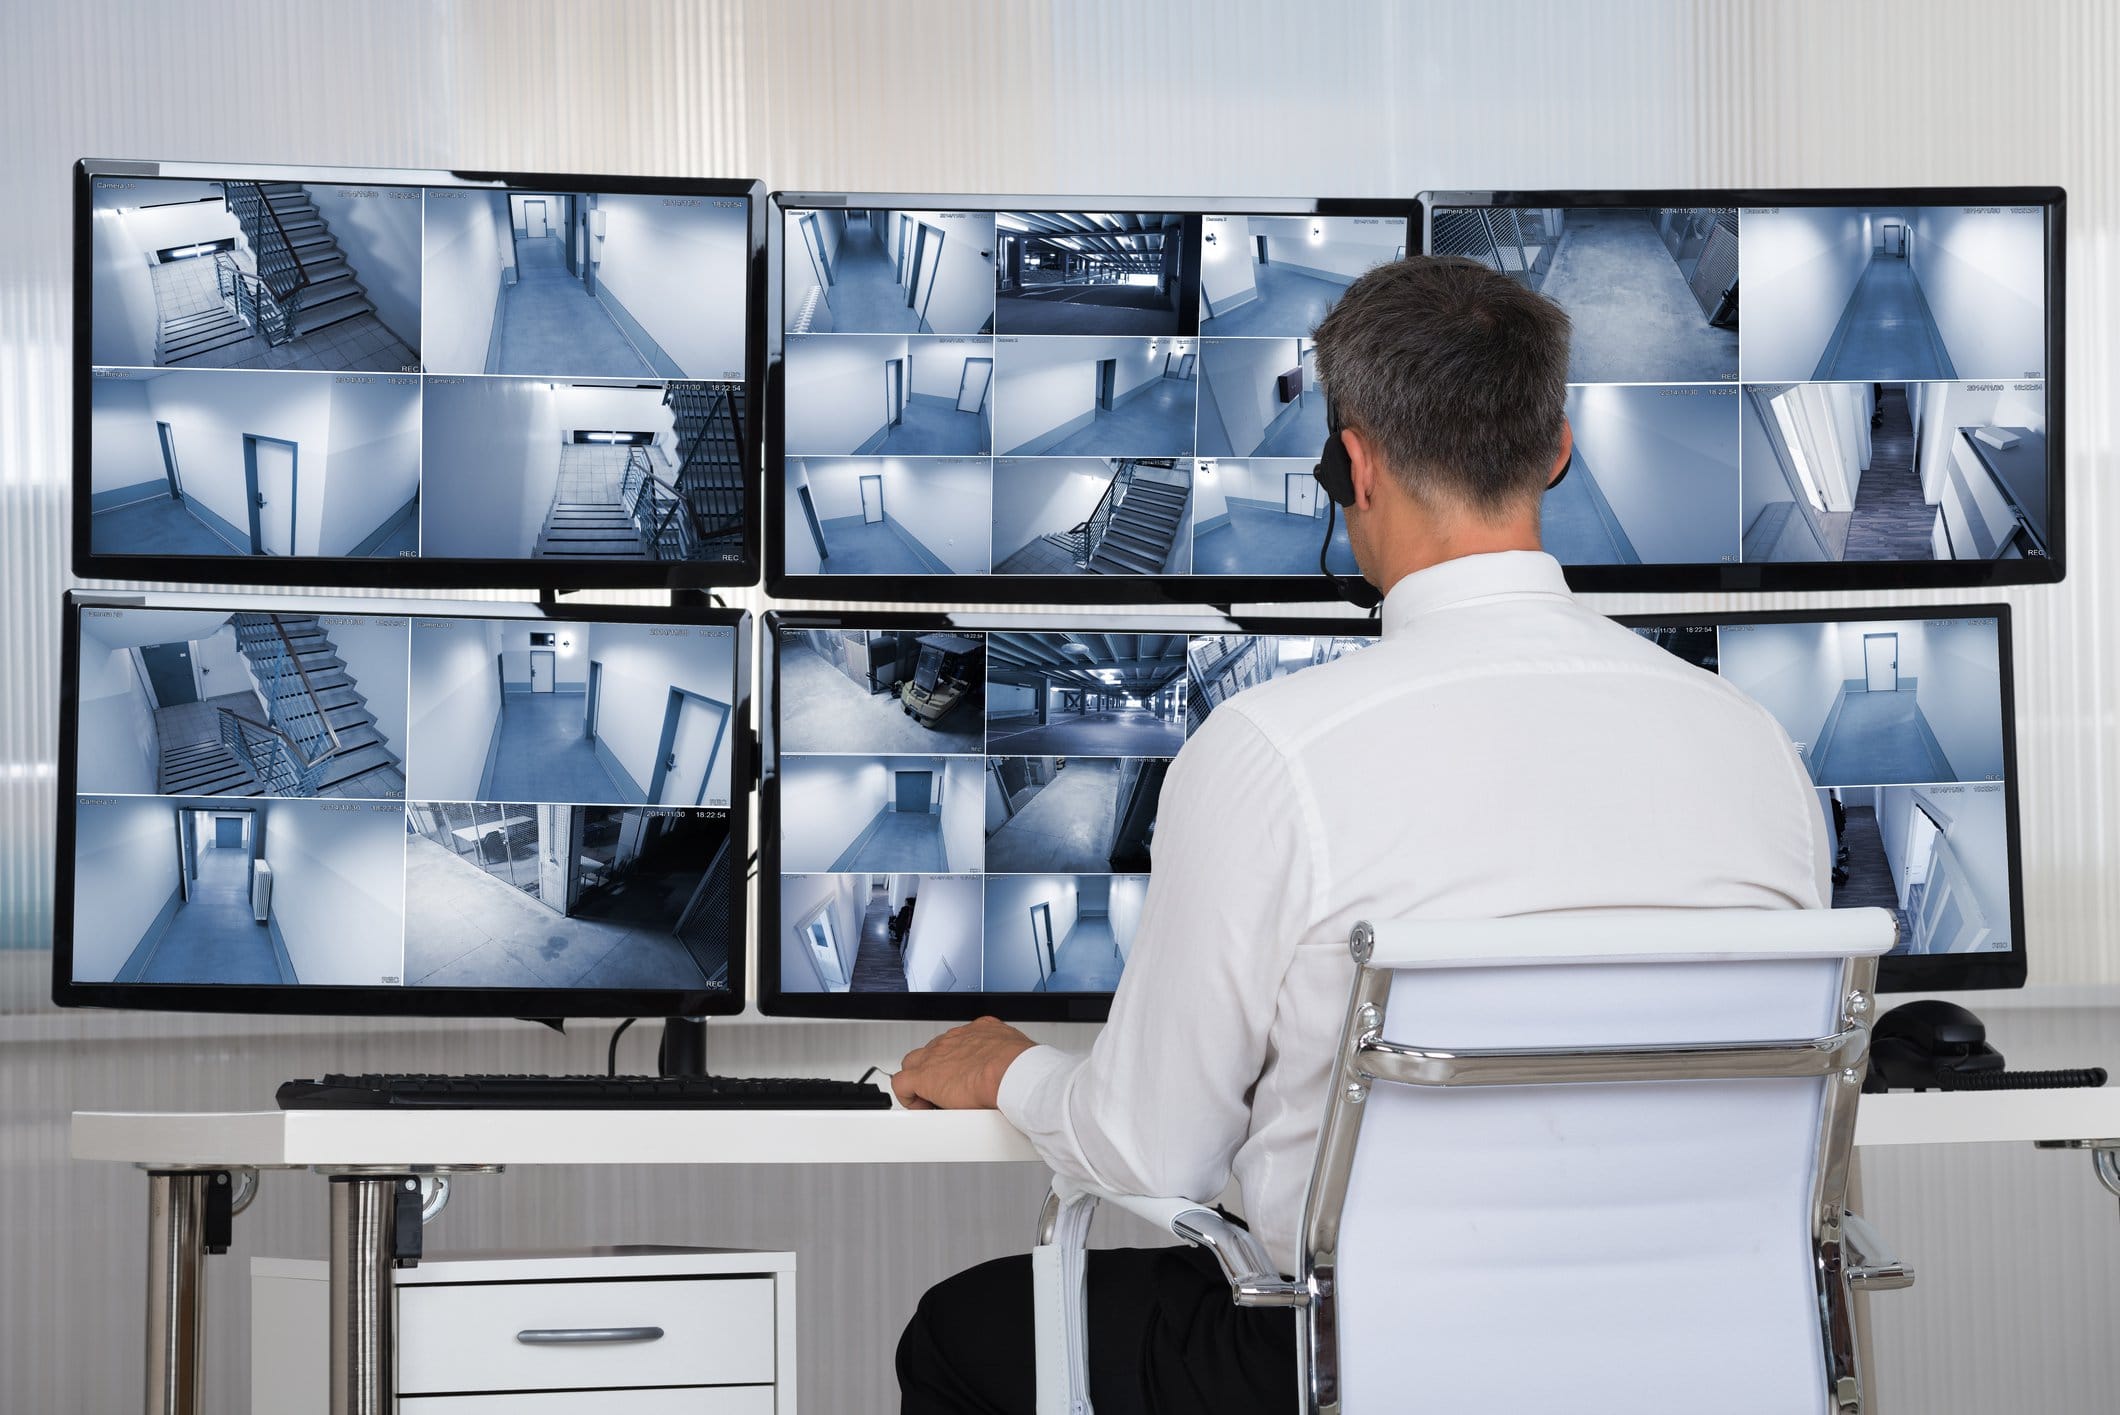 Quanto tempo as empresas mantêm suas imagens de CFTV?